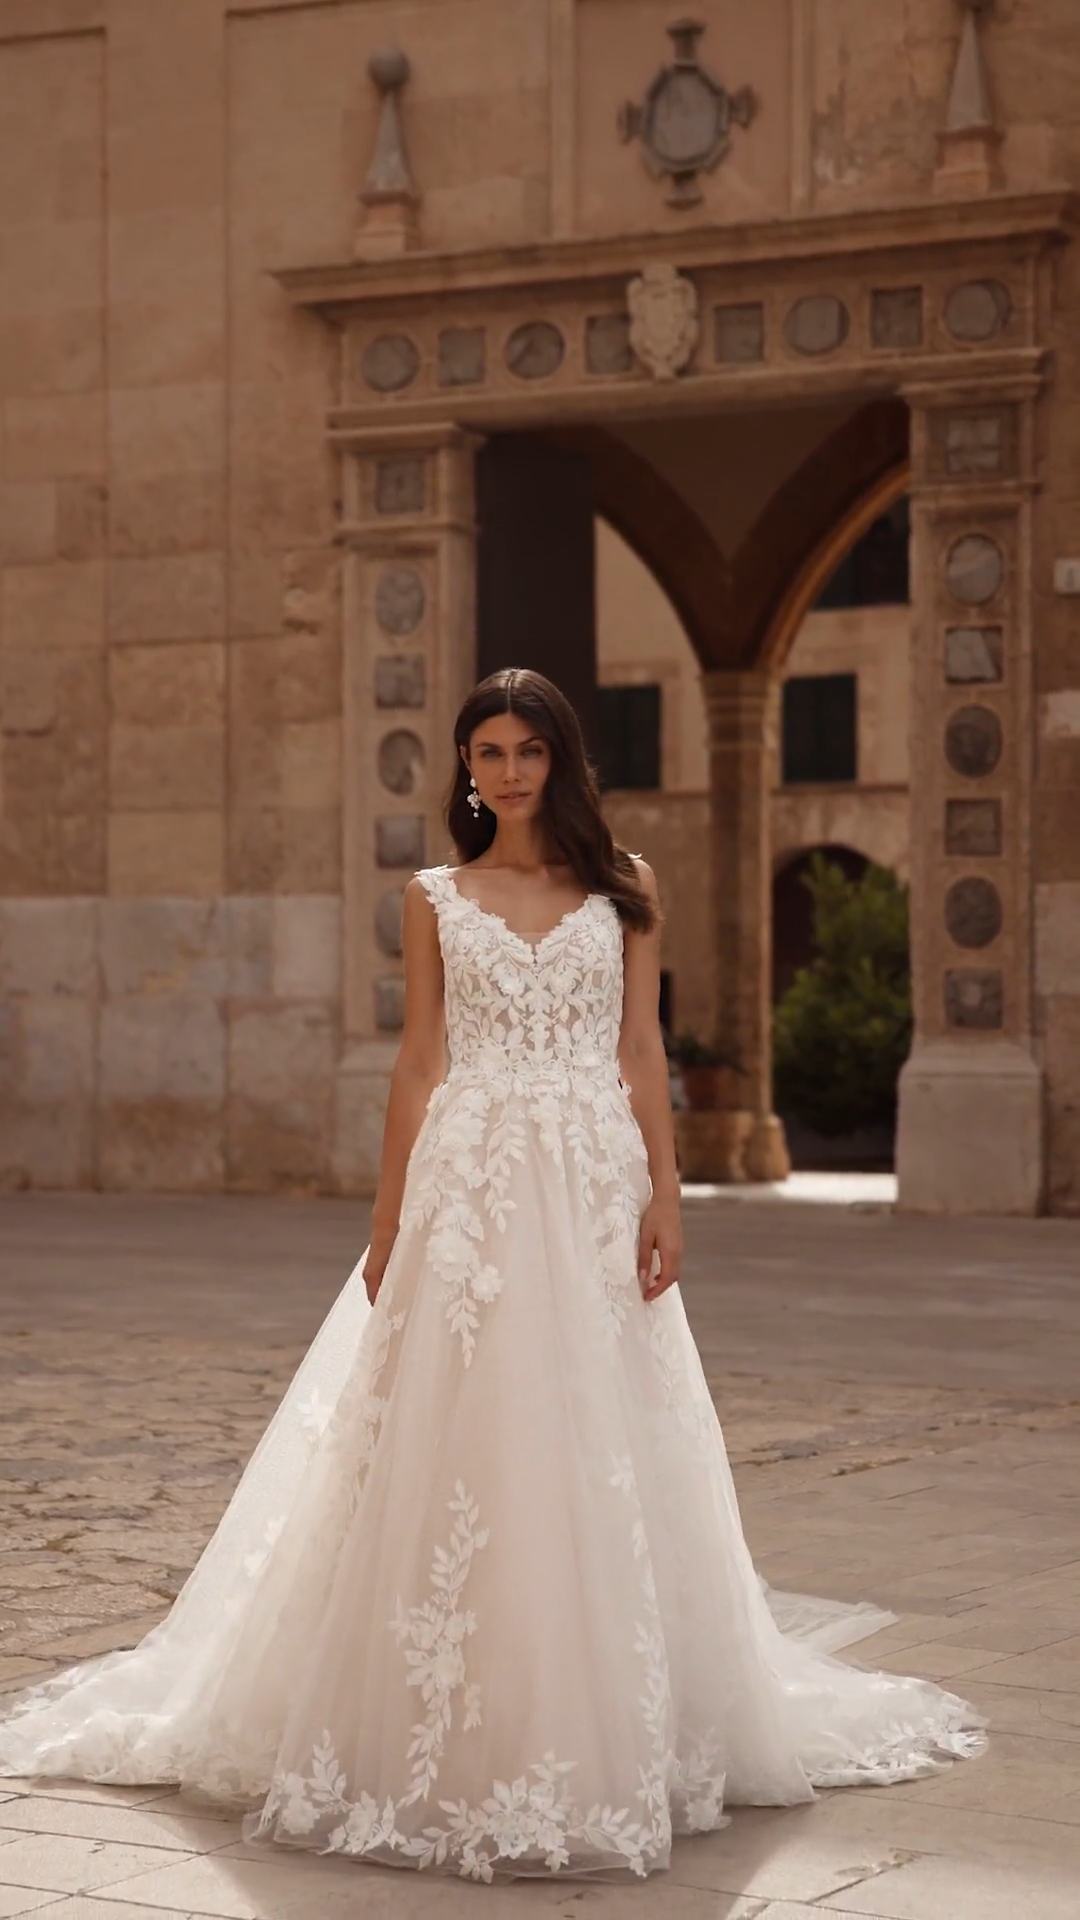 ValStefani LAILA lavish designer wedding dresses for the fancy bride